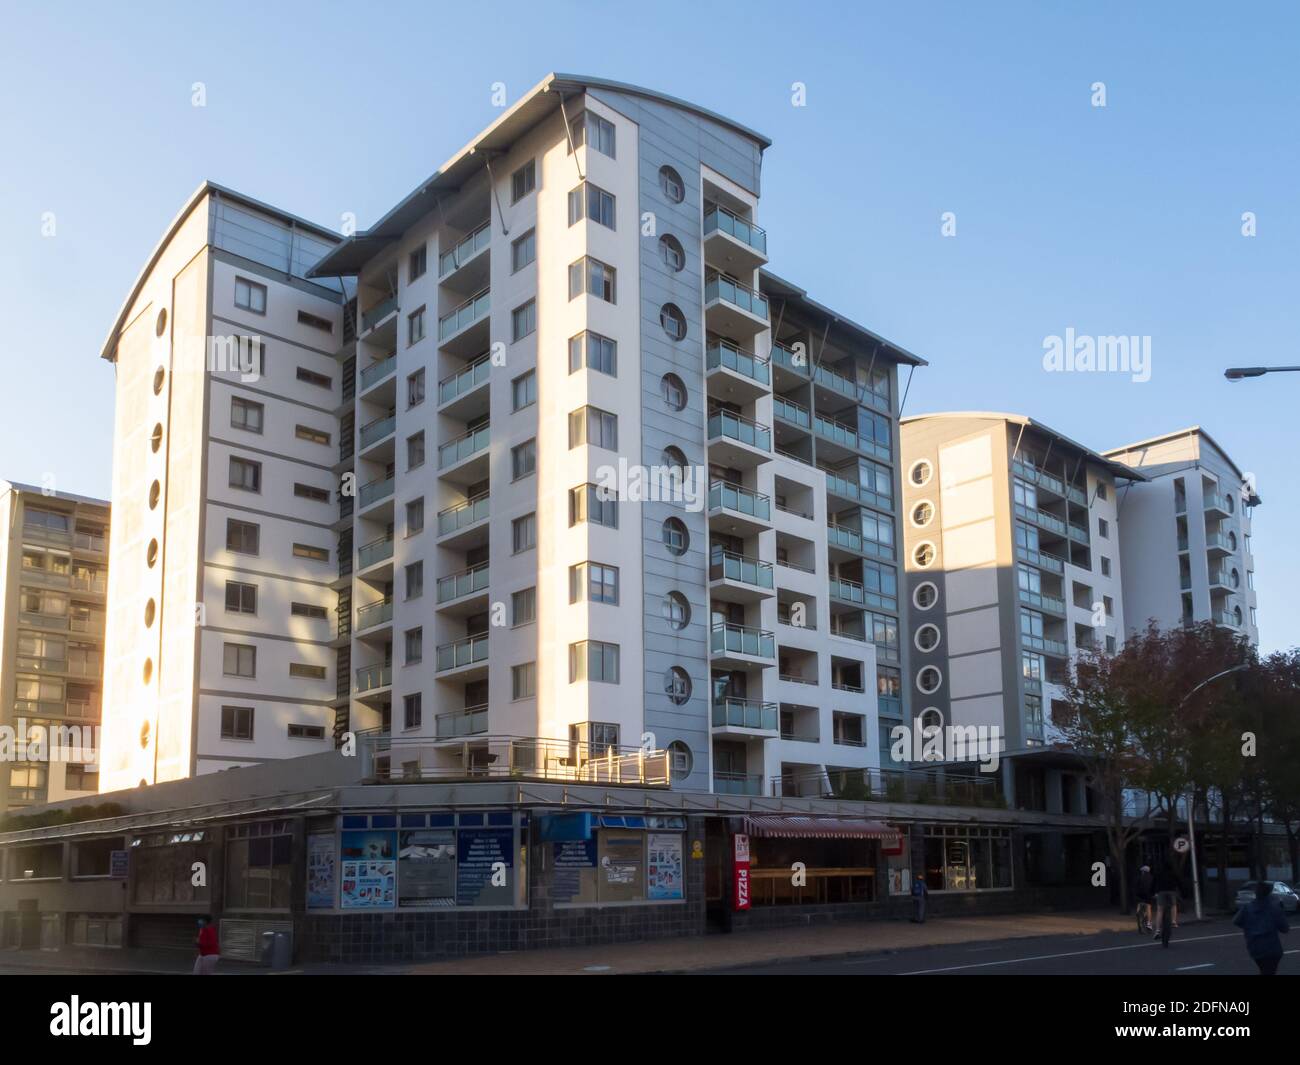 Apartmentblock in moderner oder zeitgenössischer Architektur, gelegen über Geschäften in einem städtischen Vorort von Kapstadt, Südafrika Stockfoto